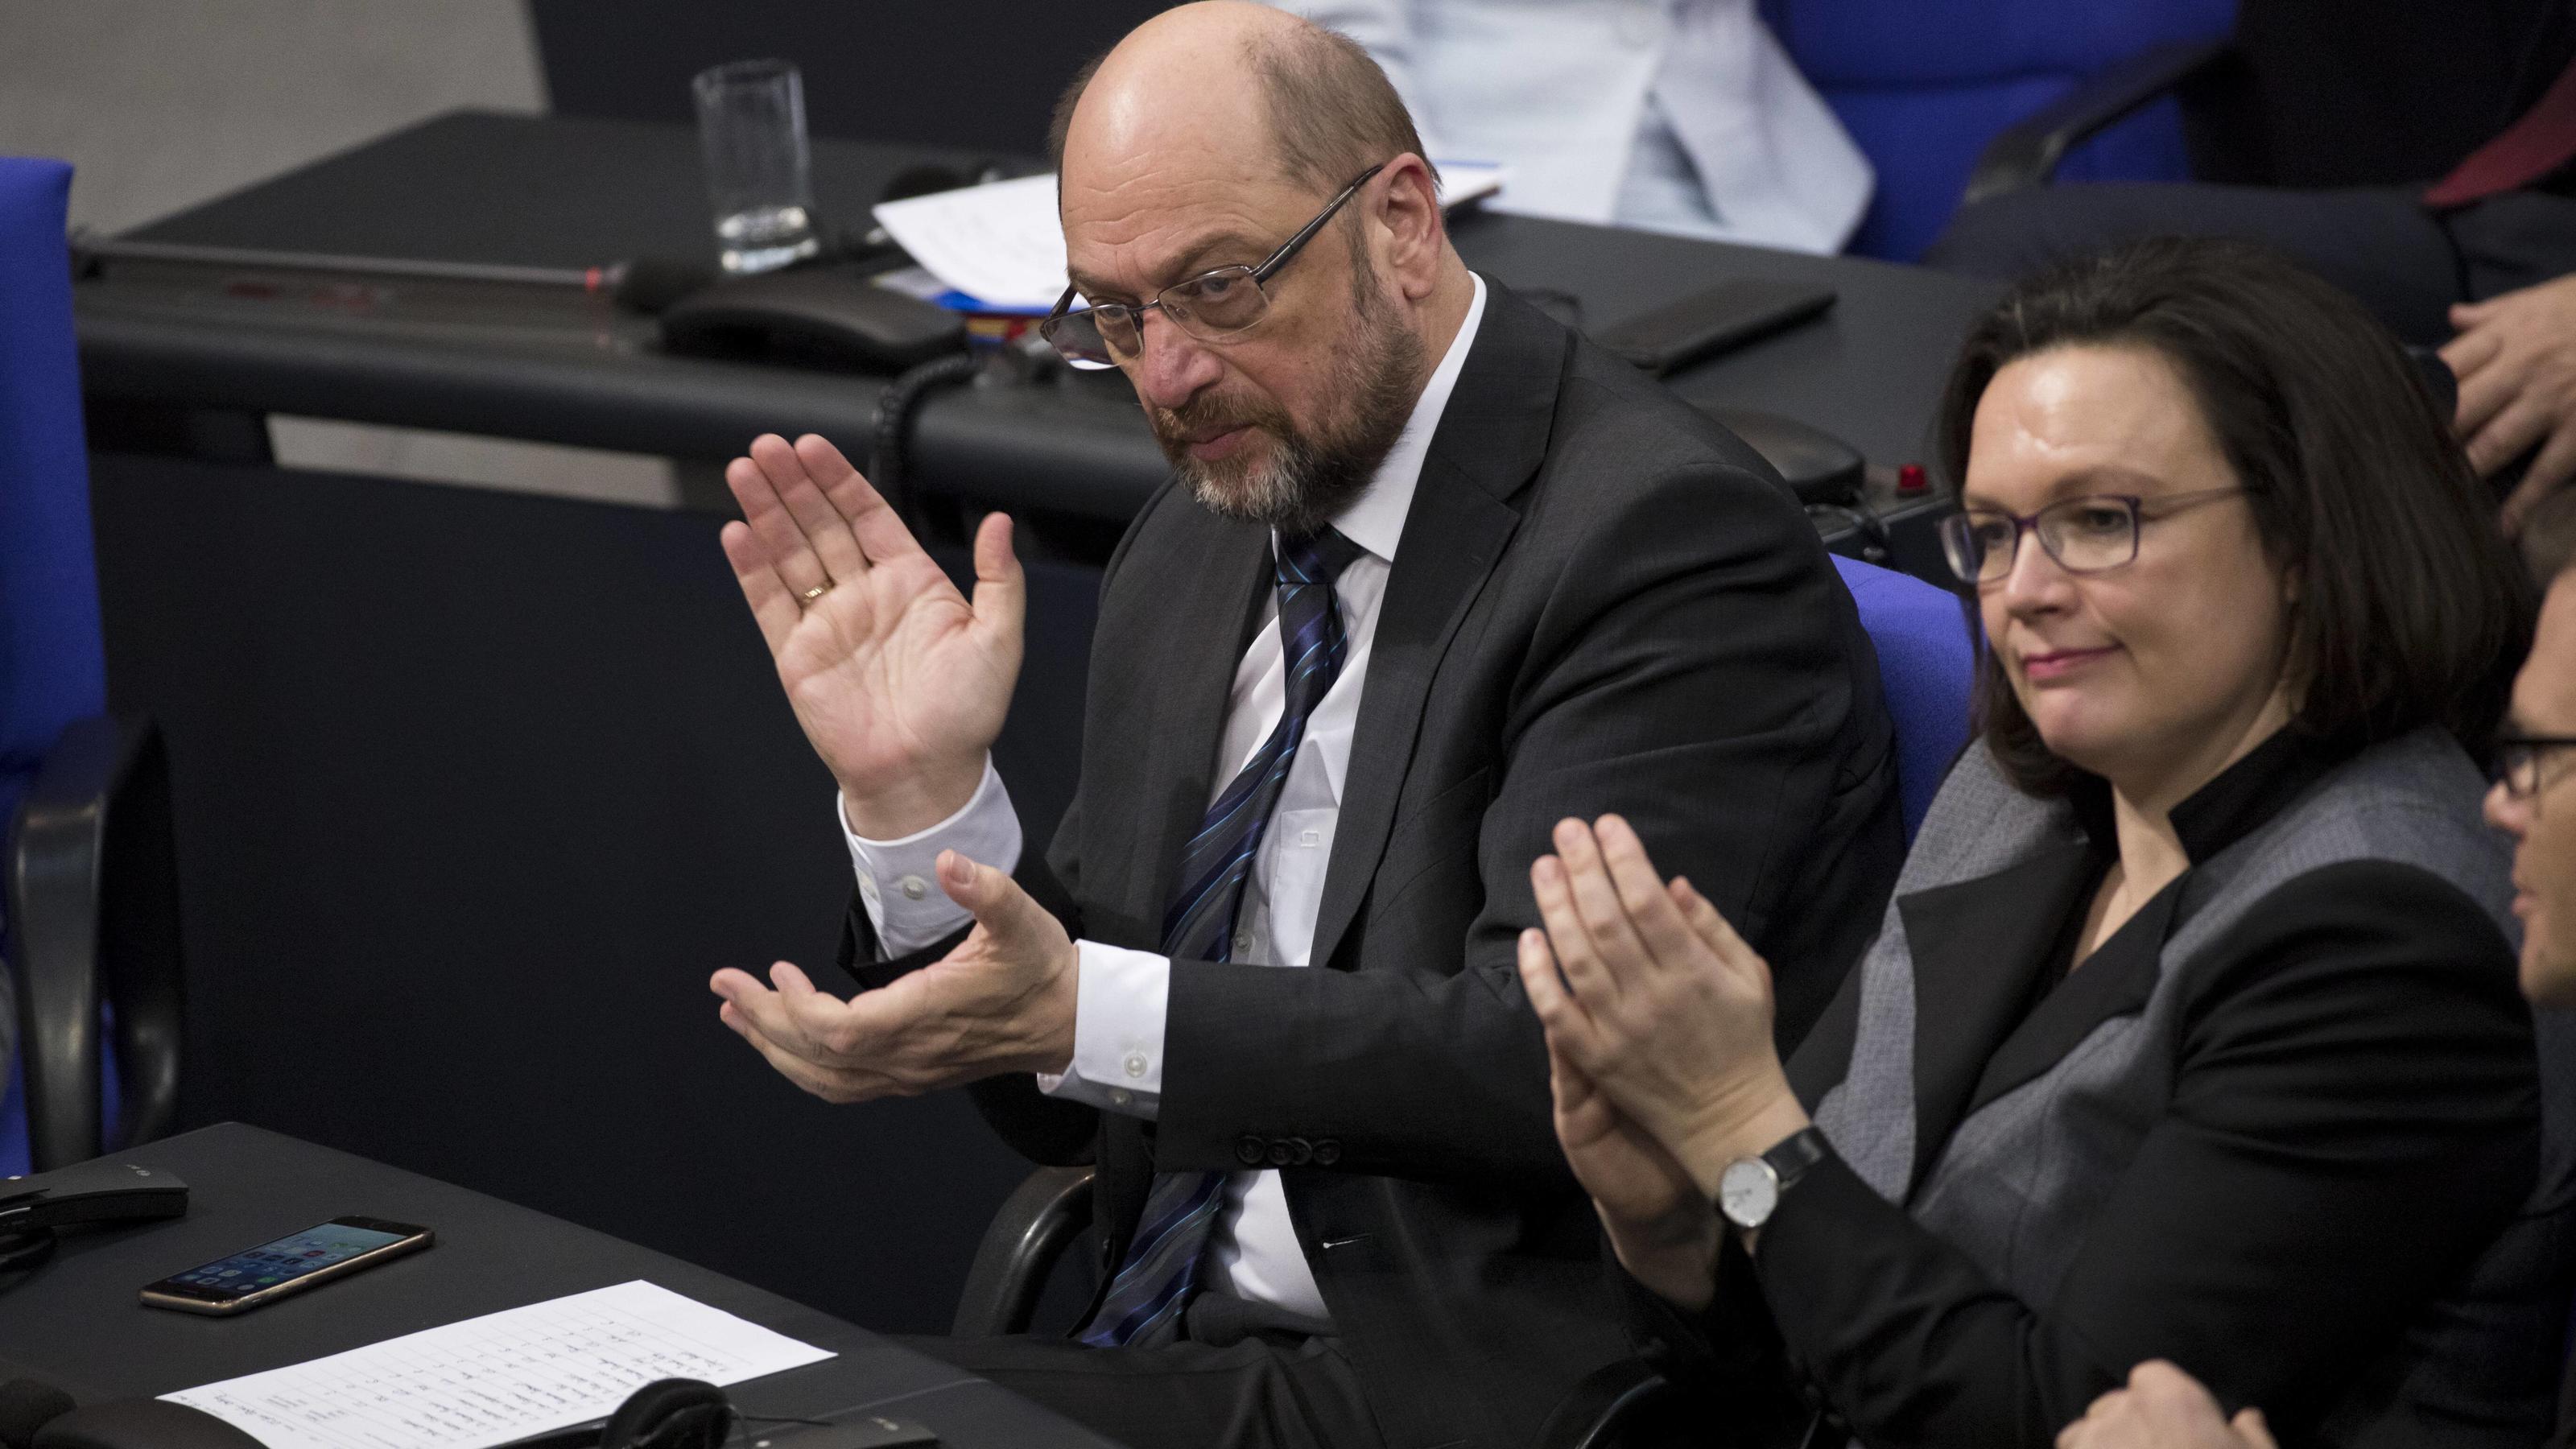 Martin Schulz (L) und Andrea Nahles (R) im Bundestag waehrend der Sondersitzung zum 55. Jubilaeum des Elysee Vertrags in Berlin am 22. Januar 2018. Sondersitzung im Bundestag zum 55. Jubilaeum des Elysee Vertrags *** Martin Schulz L and Andrea Nahles